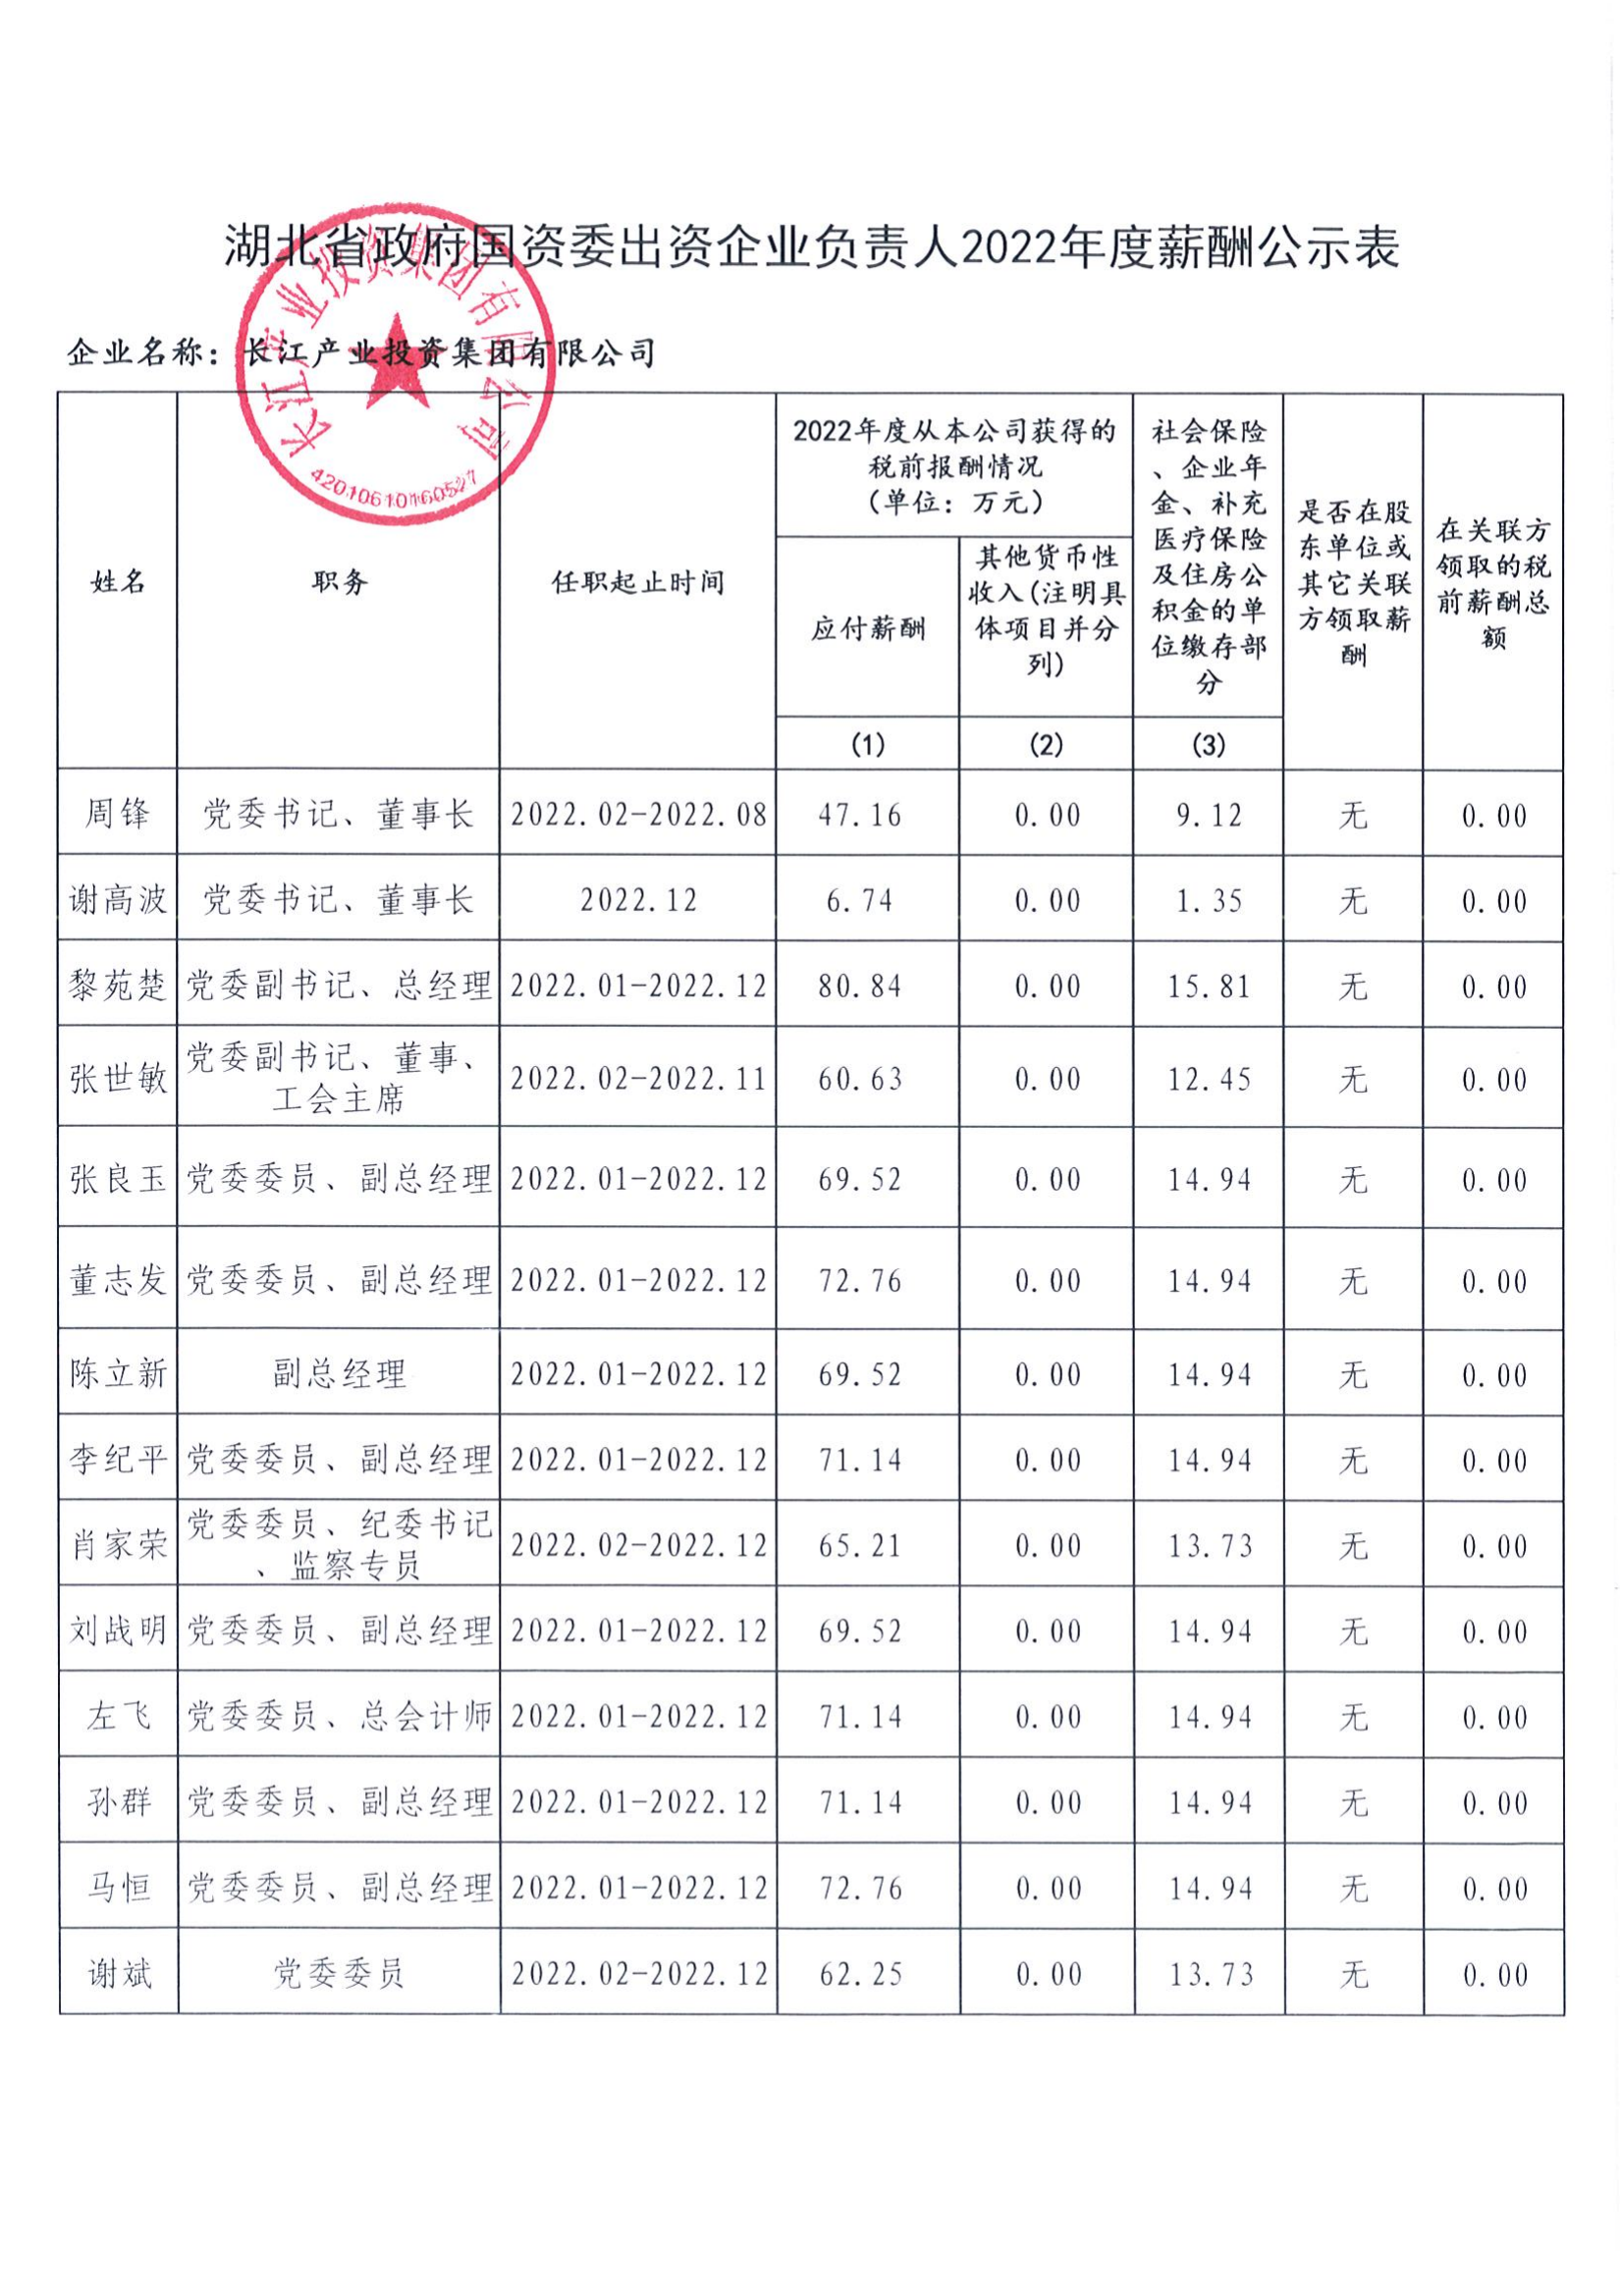 长江产业集团关于企业负责人2022年度年薪发放情况的公示_00.png